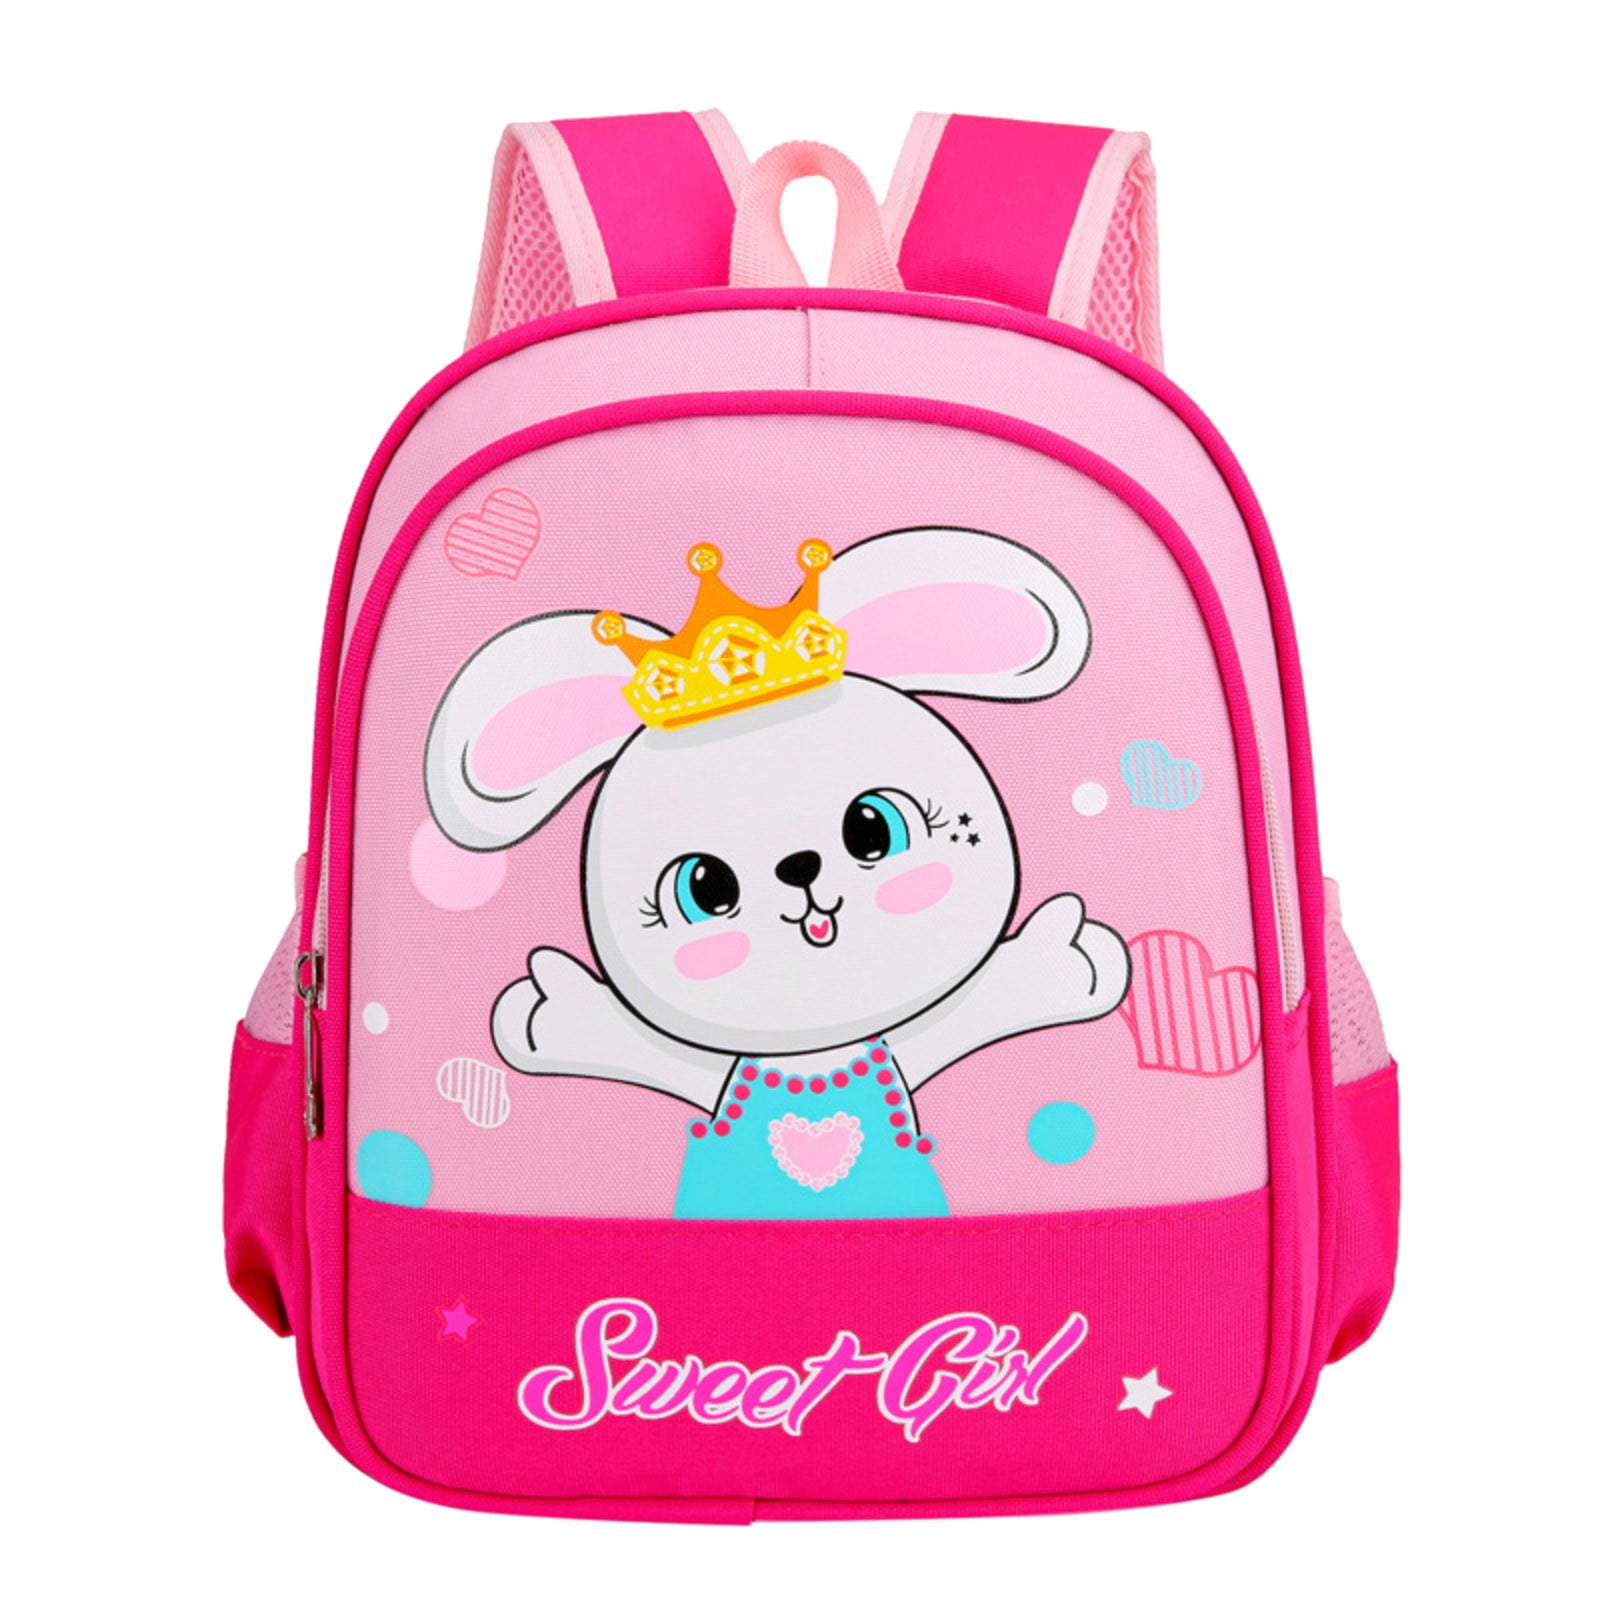 2-4 Years Old Childrens Schoolbag Cute Cartoon Backpack/Animal Backpack School Bag/Early Childhood Education Bag/Kids Toddlers Nursery School Bag for Baby Boys Girls 